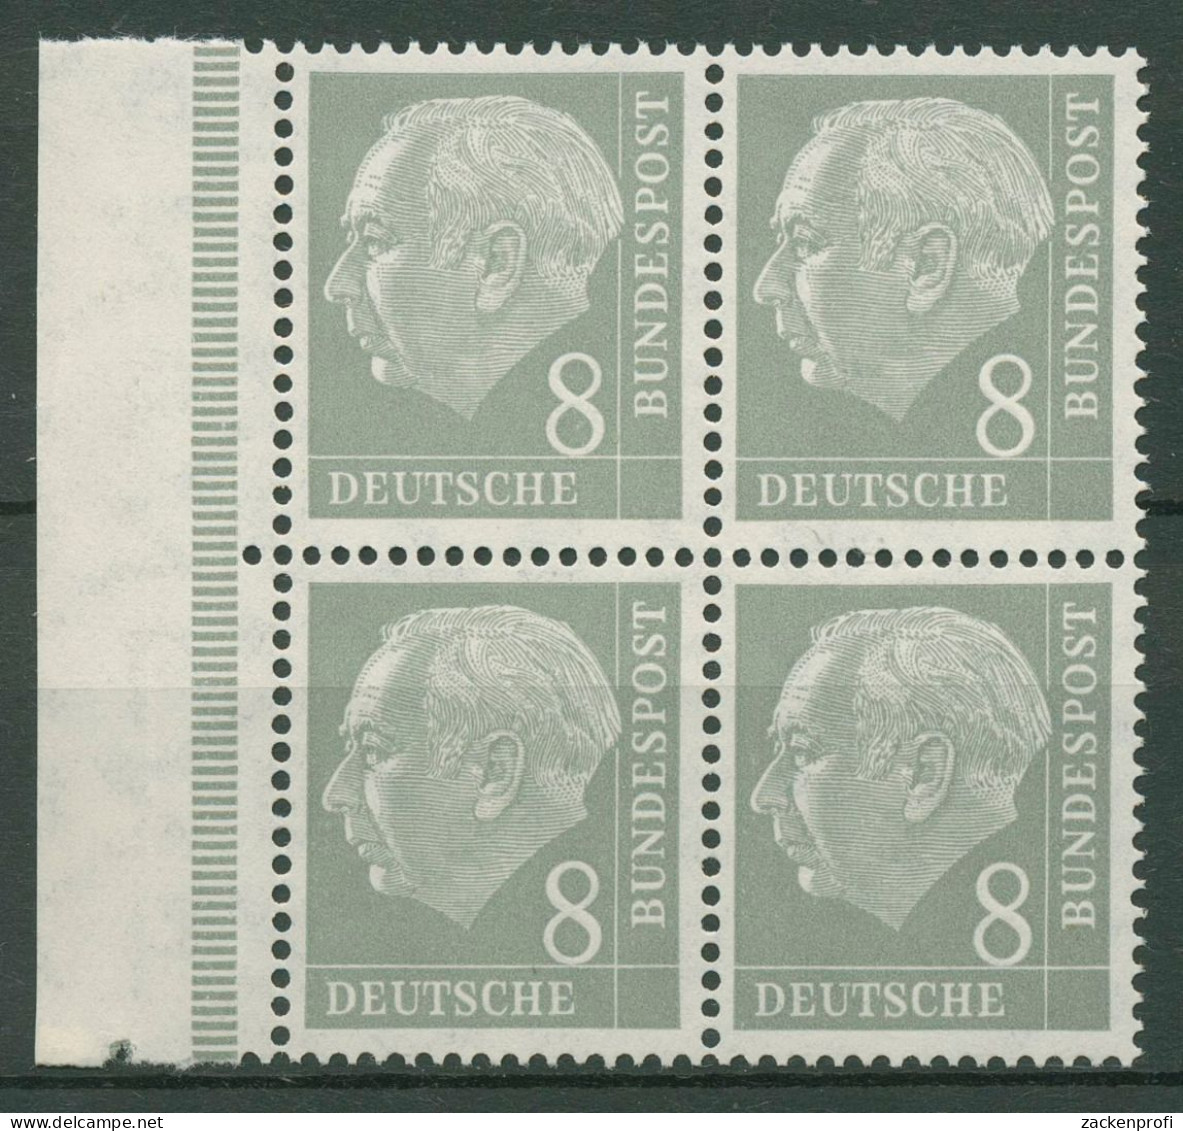 Bund 1954 Heuss I Bogenmarke 182 X Ww 4er-Block Rand Links Postfrisch - Ungebraucht